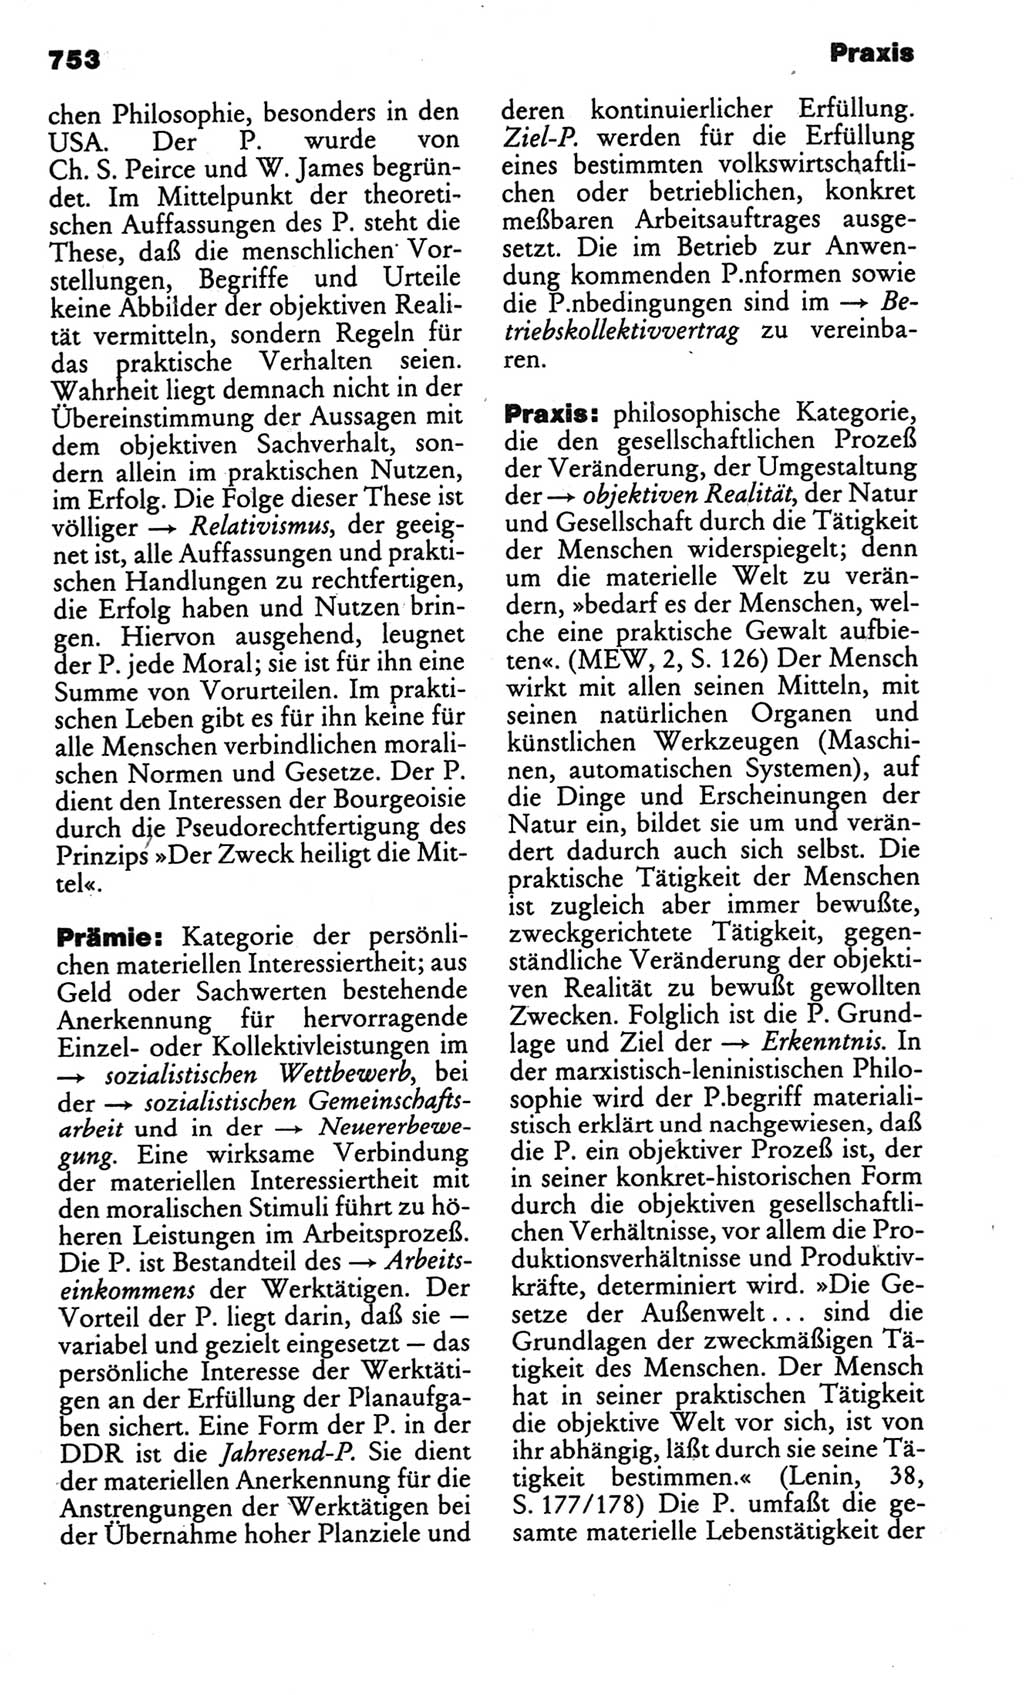 Kleines politisches Wörterbuch [Deutsche Demokratische Republik (DDR)] 1986, Seite 753 (Kl. pol. Wb. DDR 1986, S. 753)